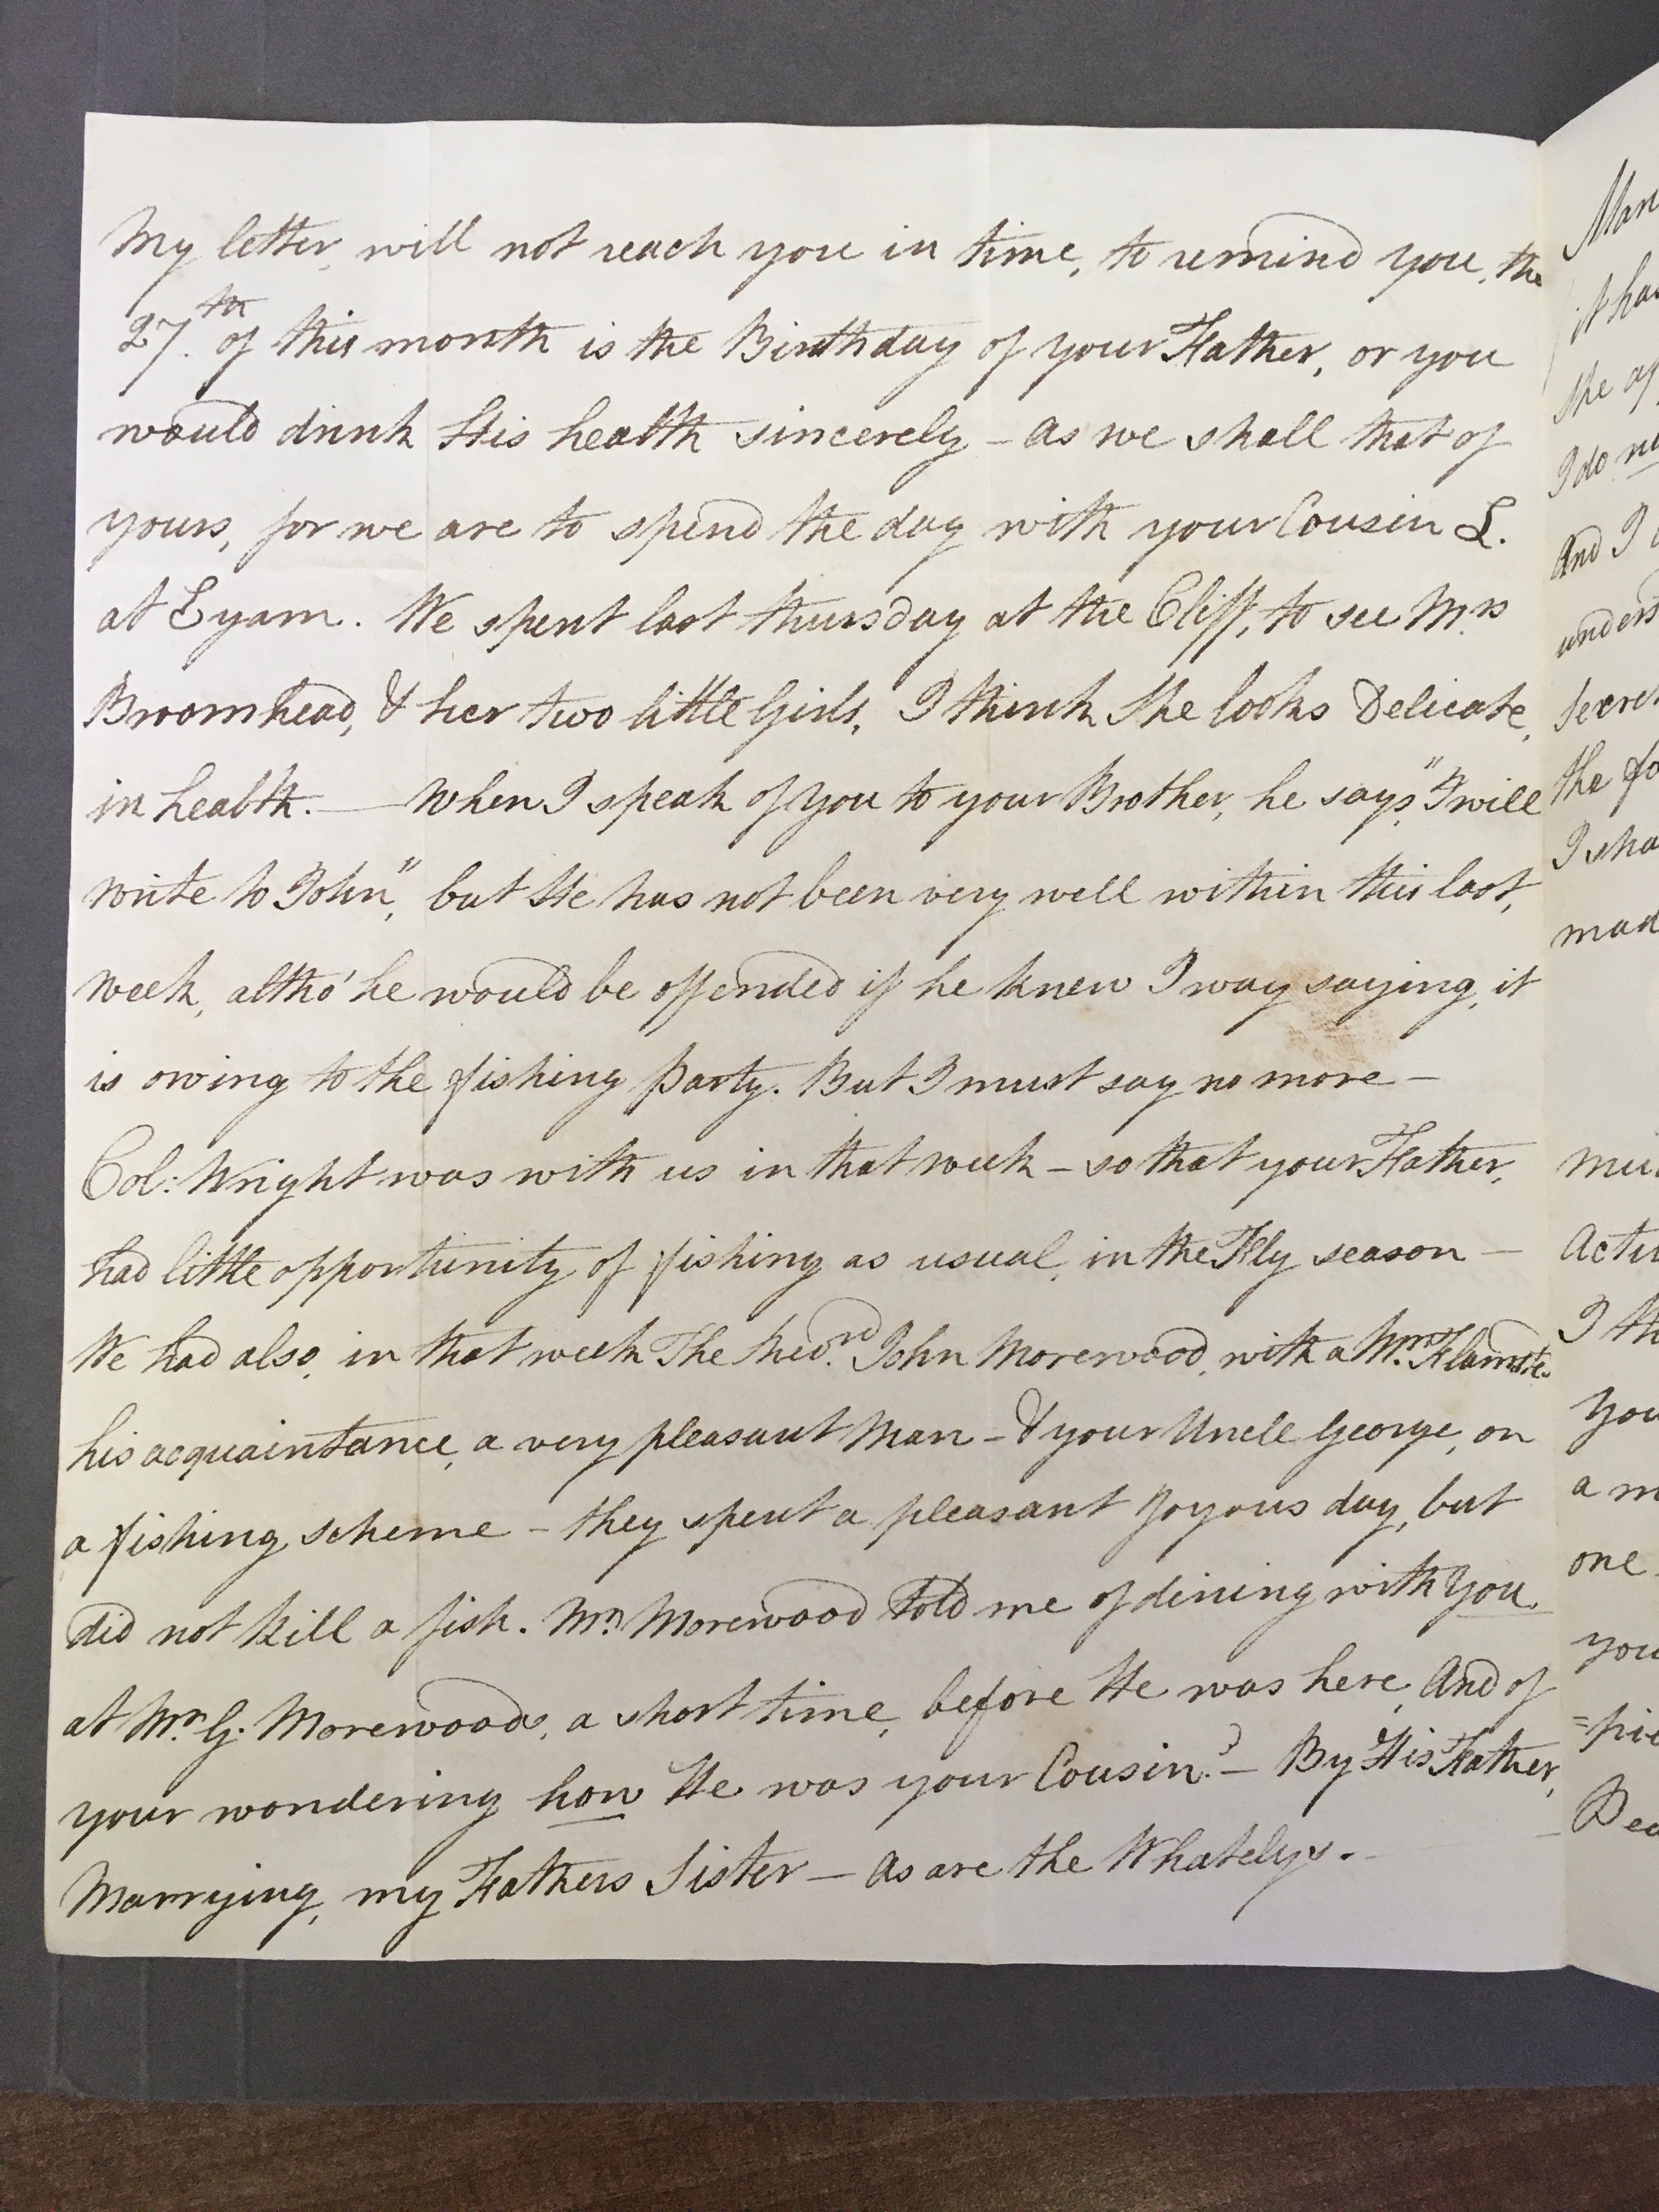 Image #2 of letter: Elizabeth Longsdon (snr) to John Longsdon, 25 June 1810